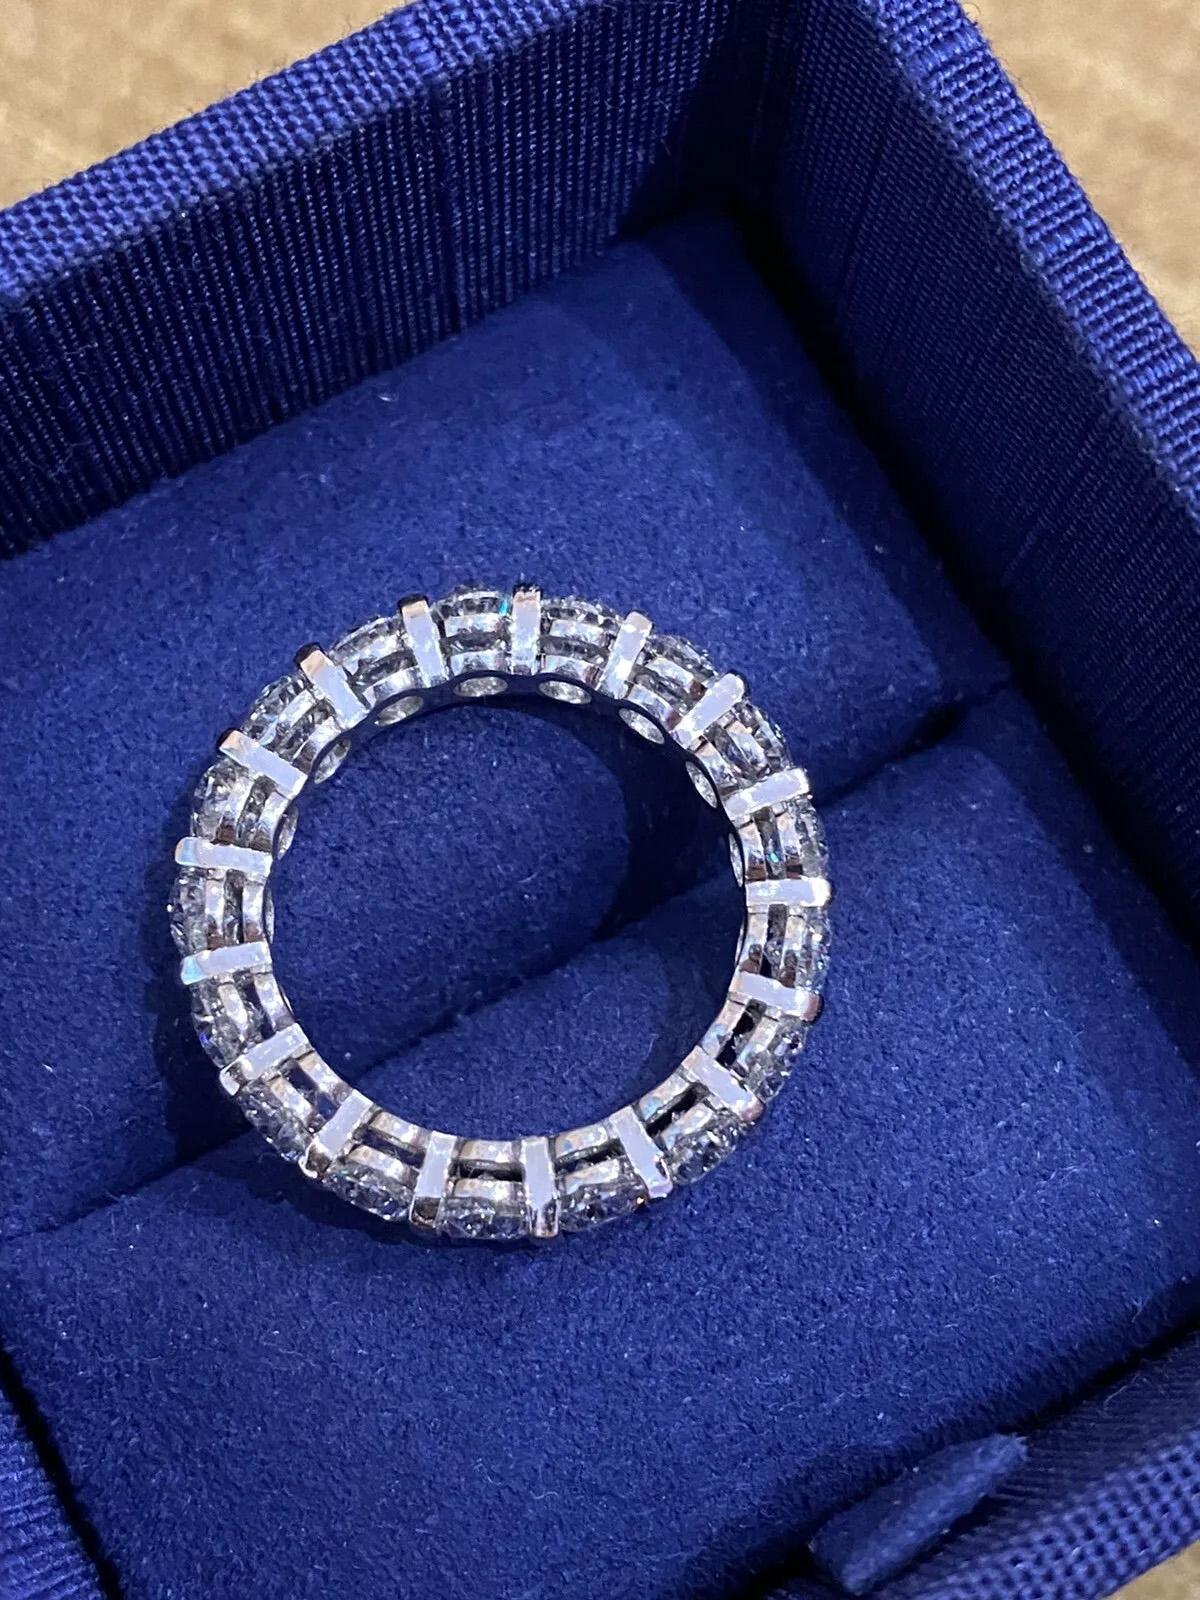 5.25 Carats Total Weight Oval Diamond Eternity Band Ring in Platinum (bague d'éternité en diamant ovale de 5,25 carats)

La bague d'éternité en diamant présente 17 magnifiques diamants de forme ovale et de taille brillante, sertis sur du platine